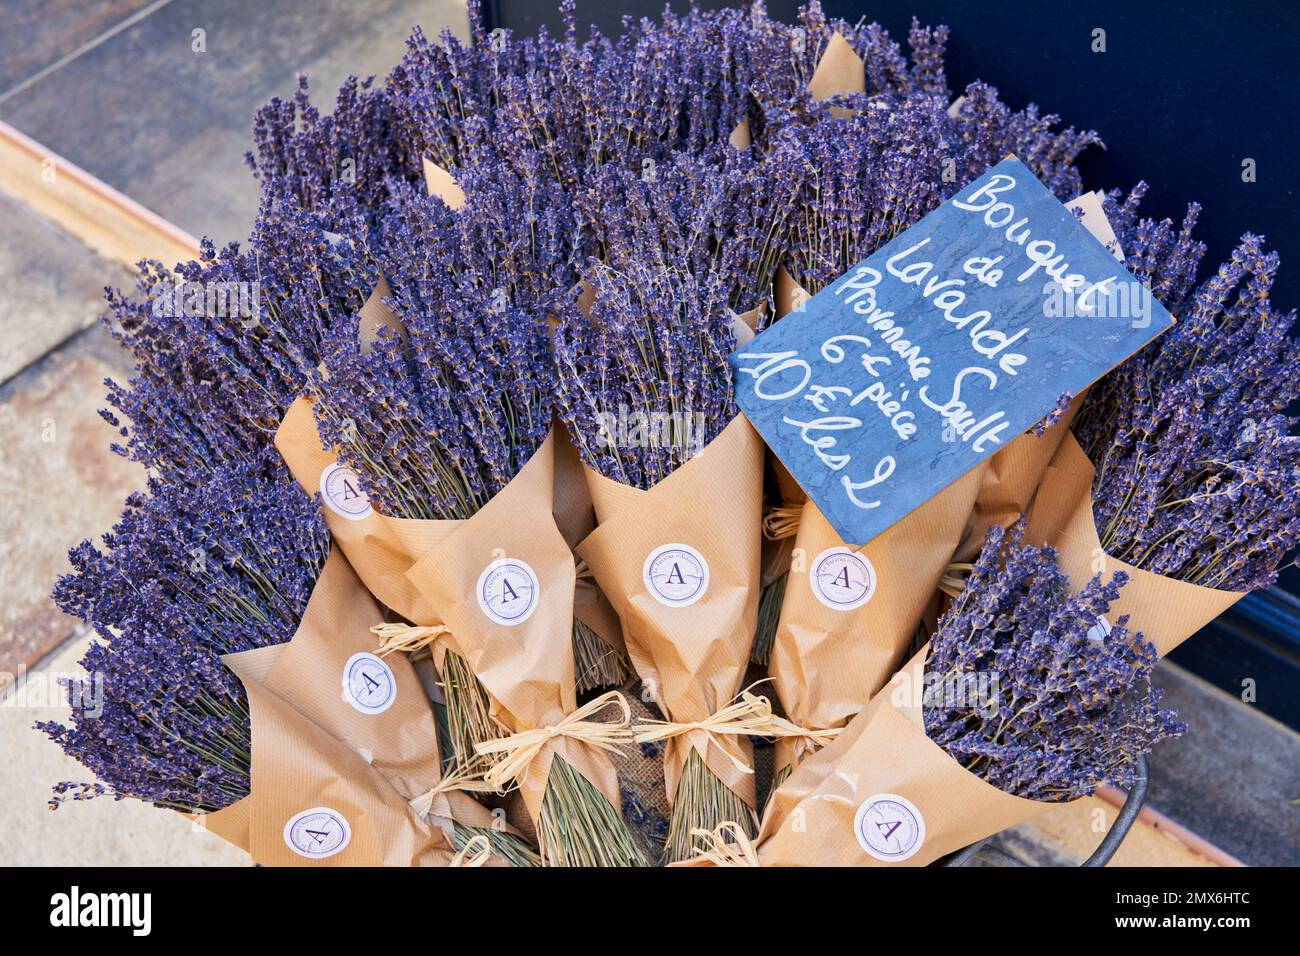 Bouquet de Lavande, Orange, Vaucluse, Provence-Alpes-Côte d’Azur, France, Europe. Many Orange shops offer a variety of dried lavender bouquets for Stock Photo